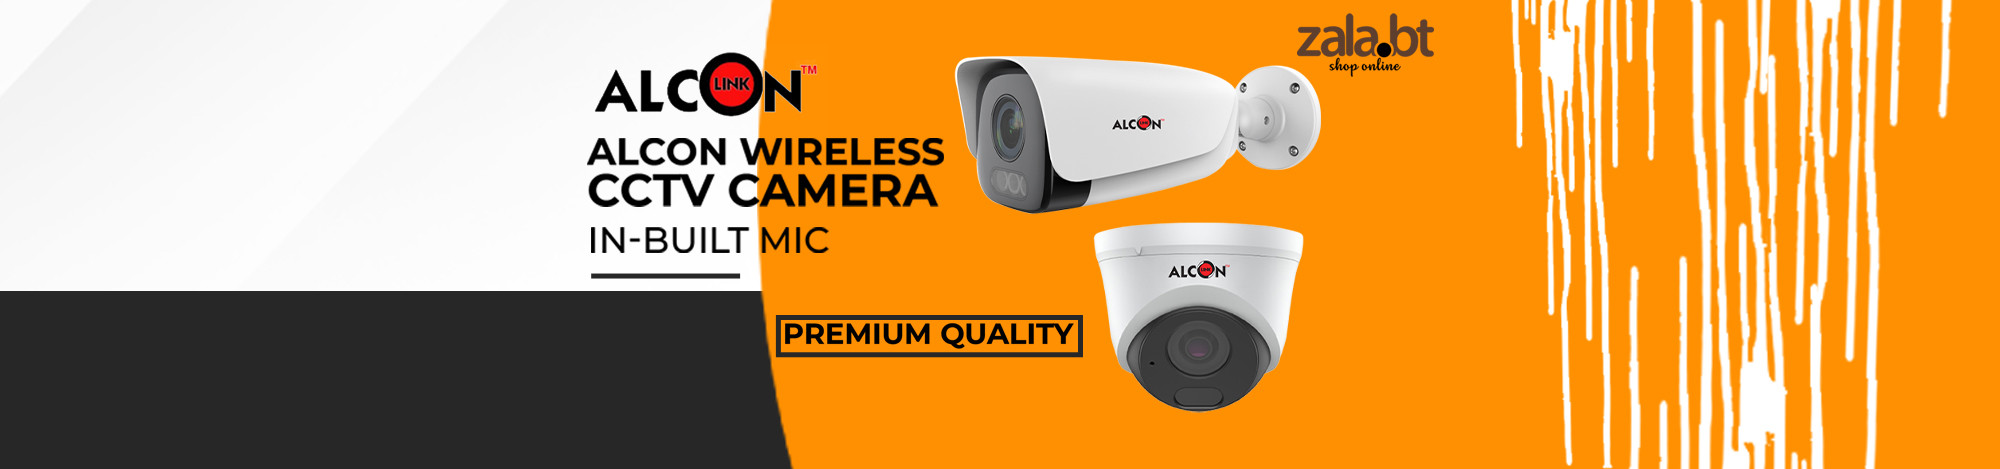 Alcon Wireless CCTV